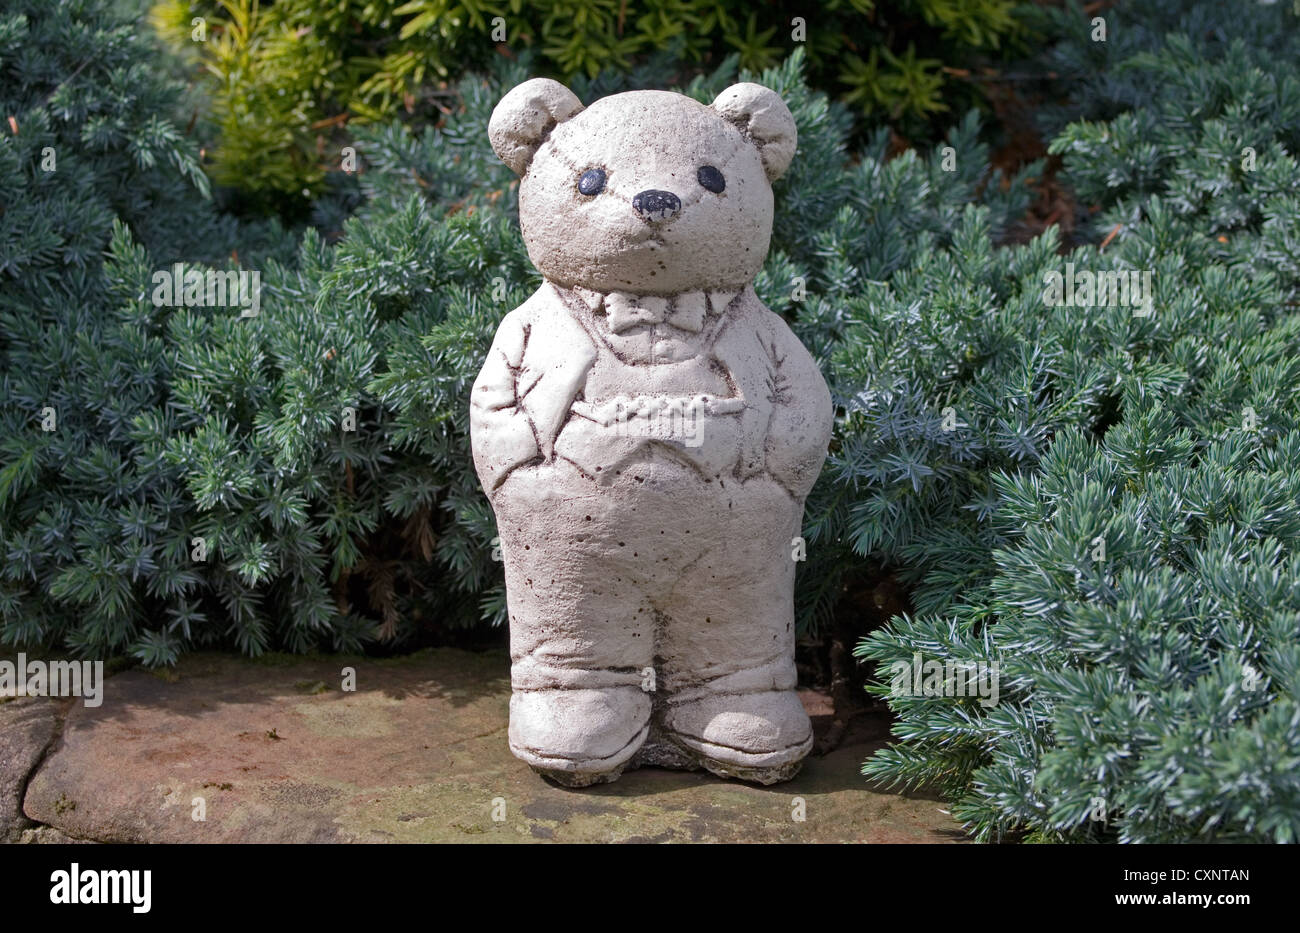 Ornement blanc mignon ours en peluche portant veste et pantalon avec ses mains dans les poches de son pantalon, debout sur le mur du jardin Banque D'Images